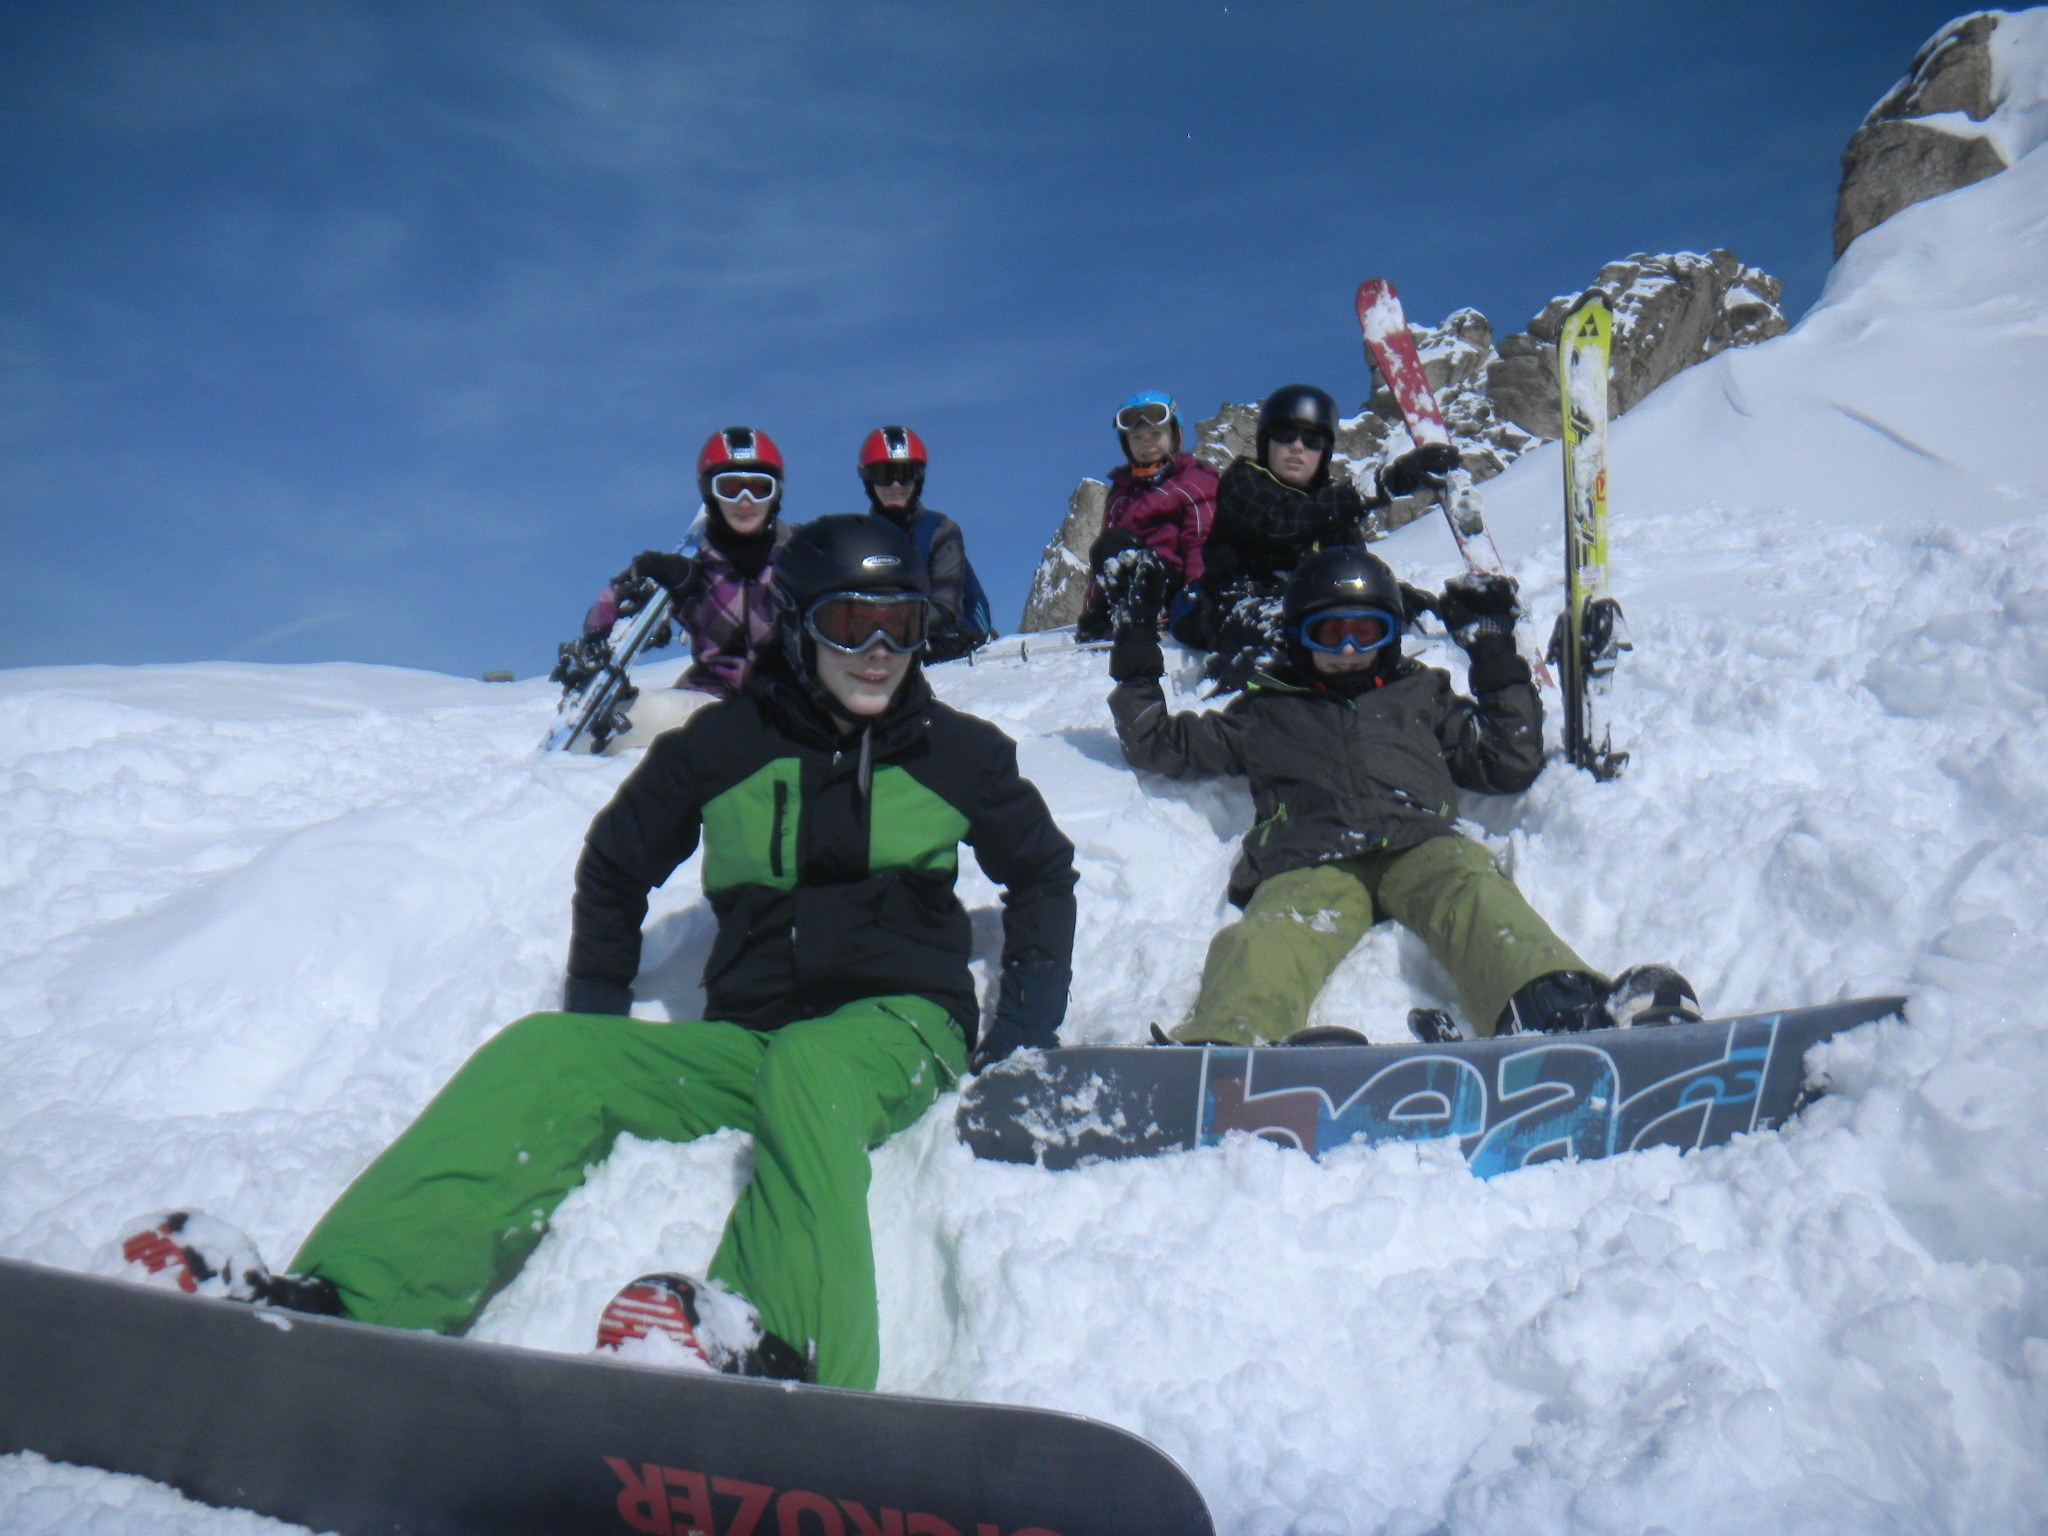 Jugendliche machen Pause im Snowboardkurs im Skigebiet Bad Hofgastein